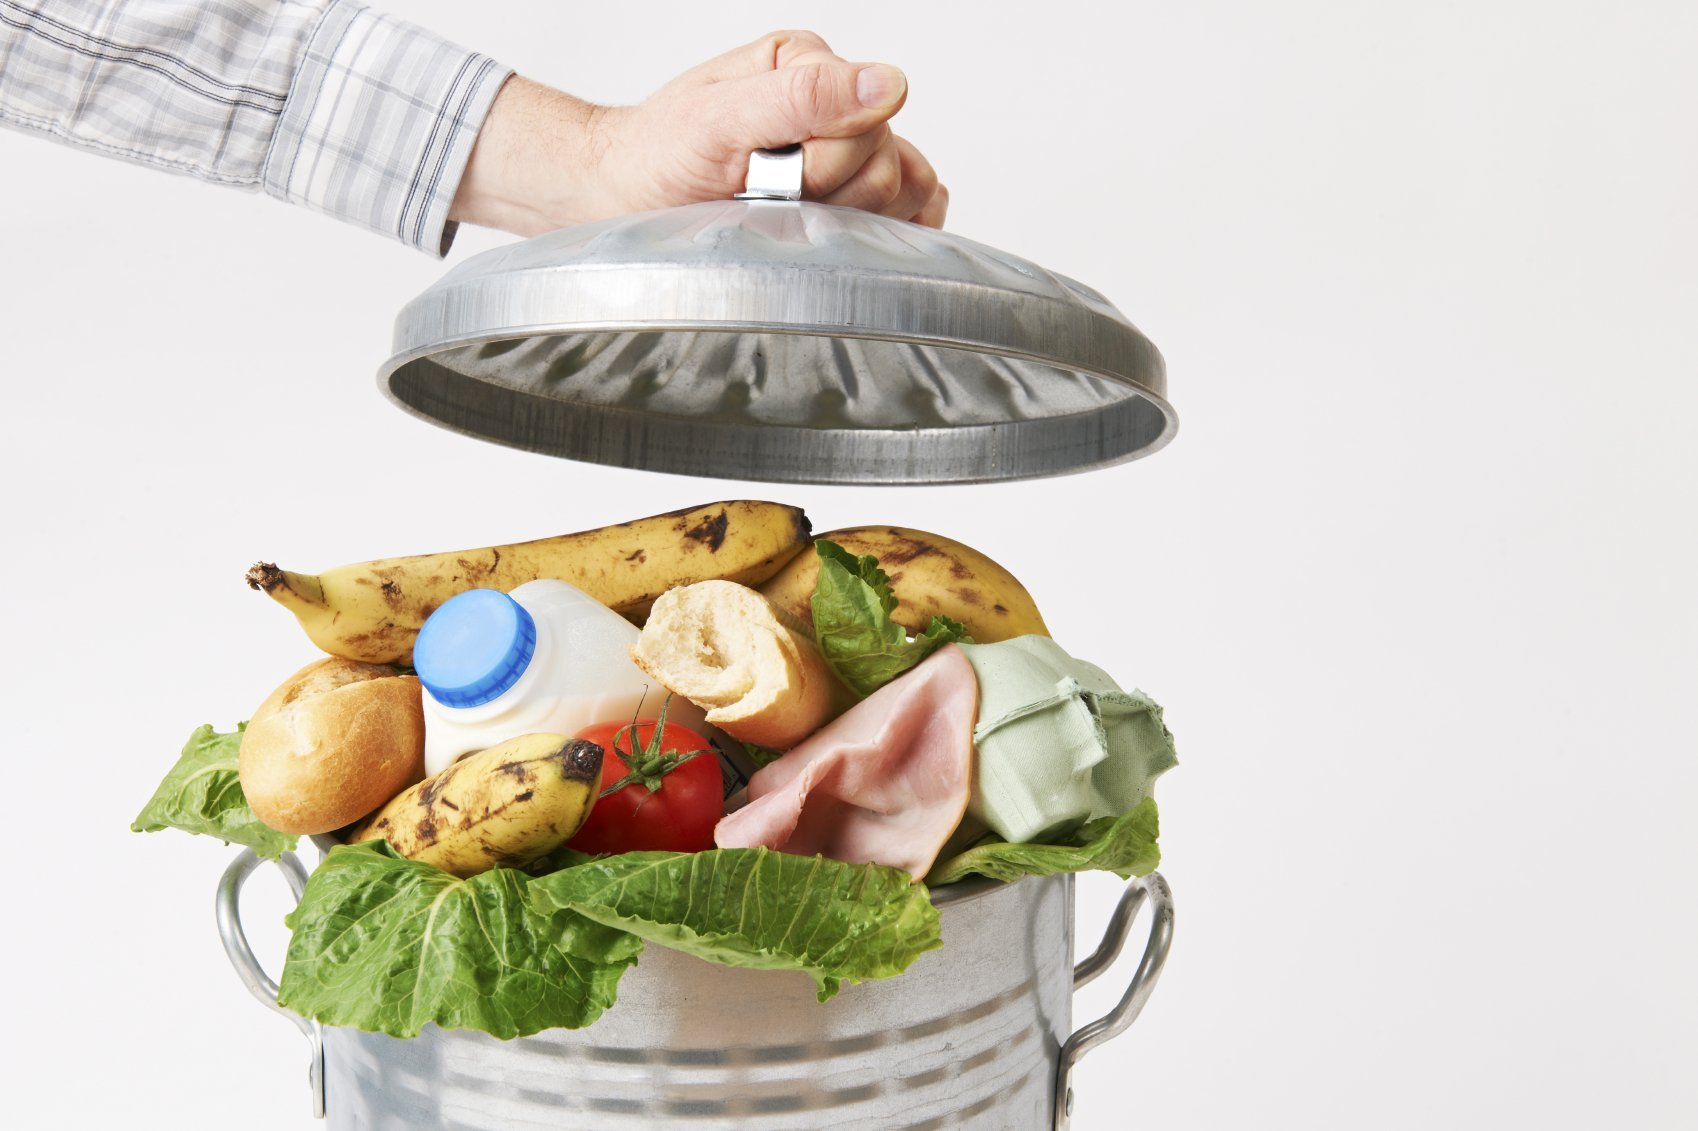 Étude sur le gaspillage alimentaire dans les foyers français